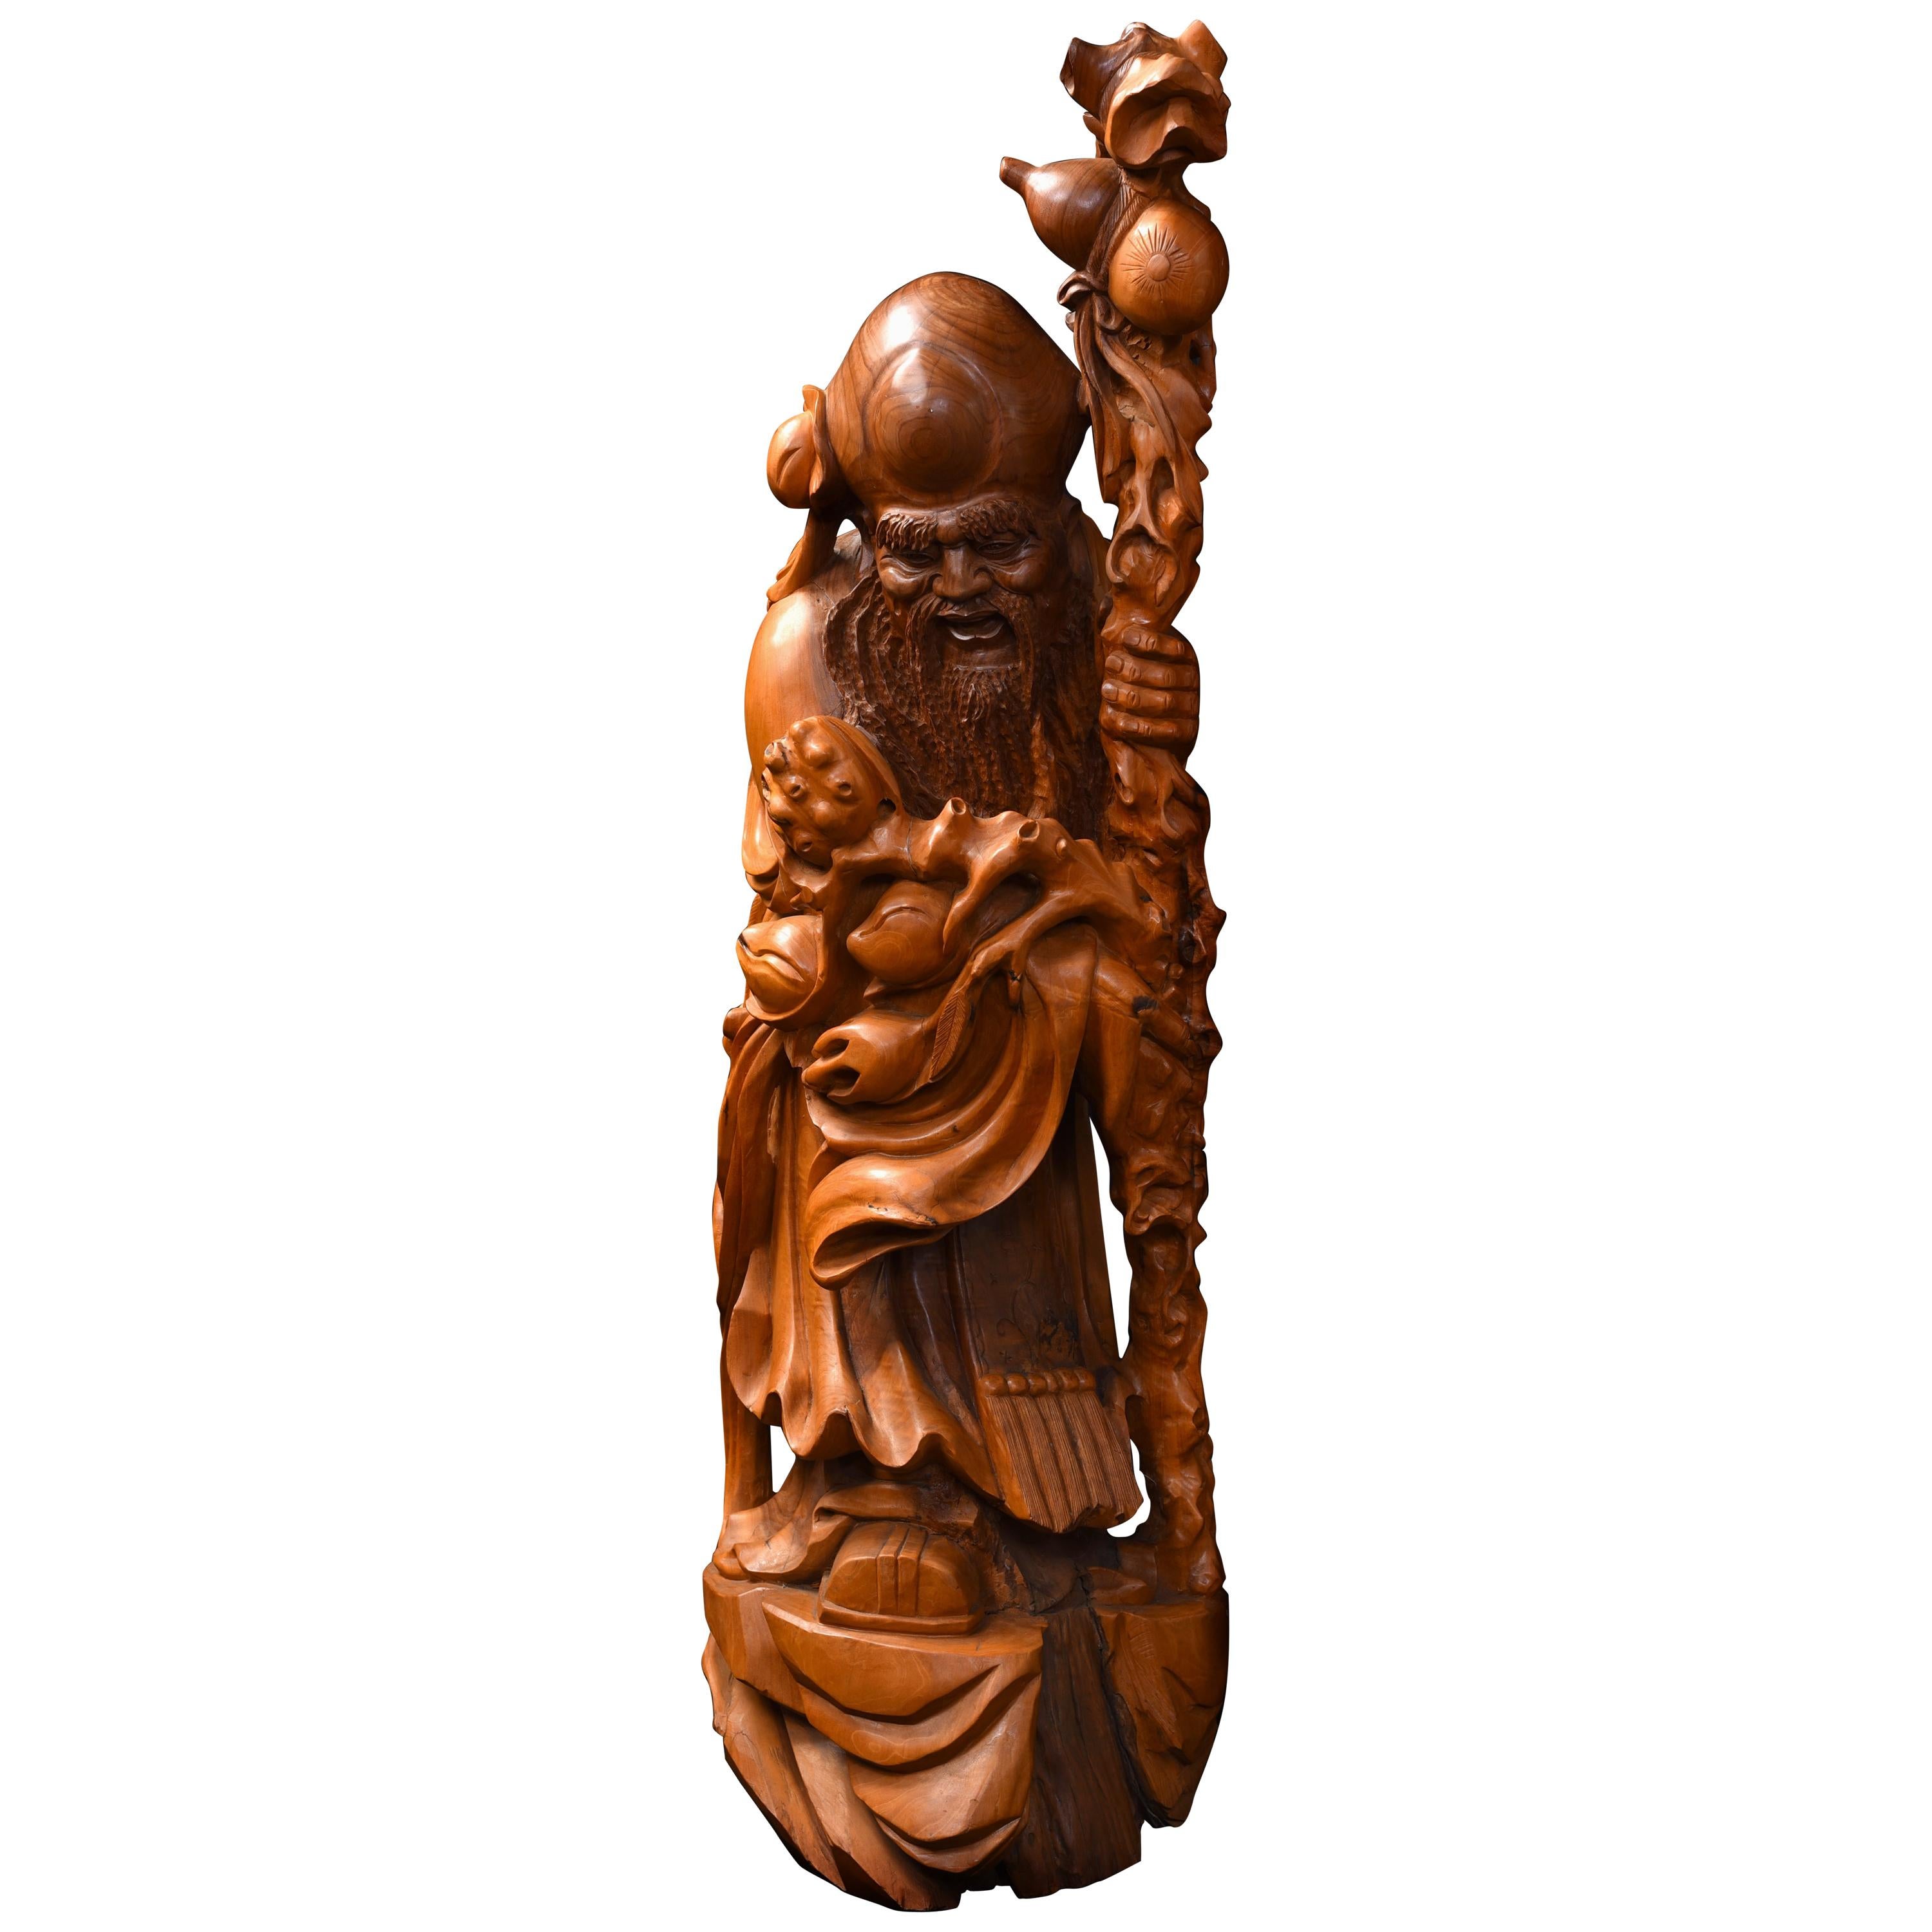 Grande sculpture chinoise sculptée du dieu Shou Xing, dieu de la sagesse et de la longévité